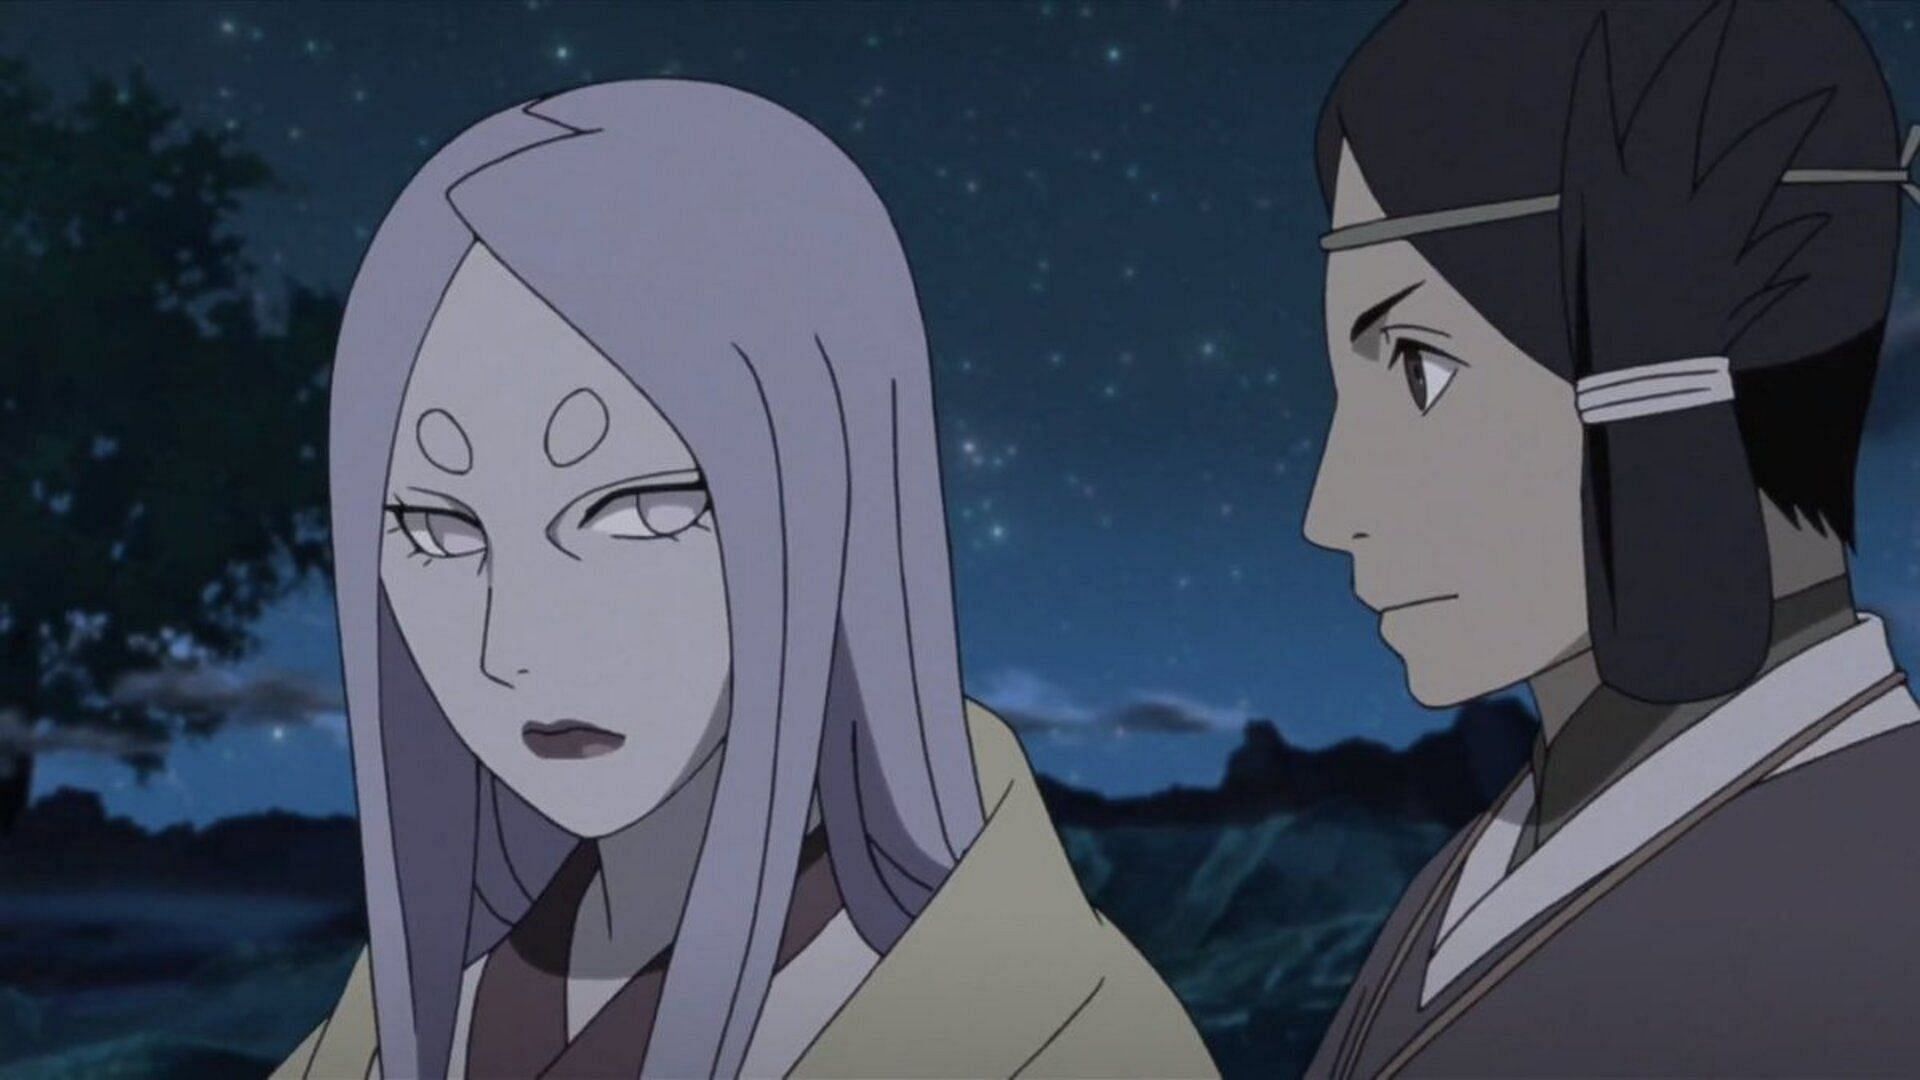 Kaguya Otsutsuki and Emperor Tenji in Naruto Shippuden (Image via Studio Pierrot)